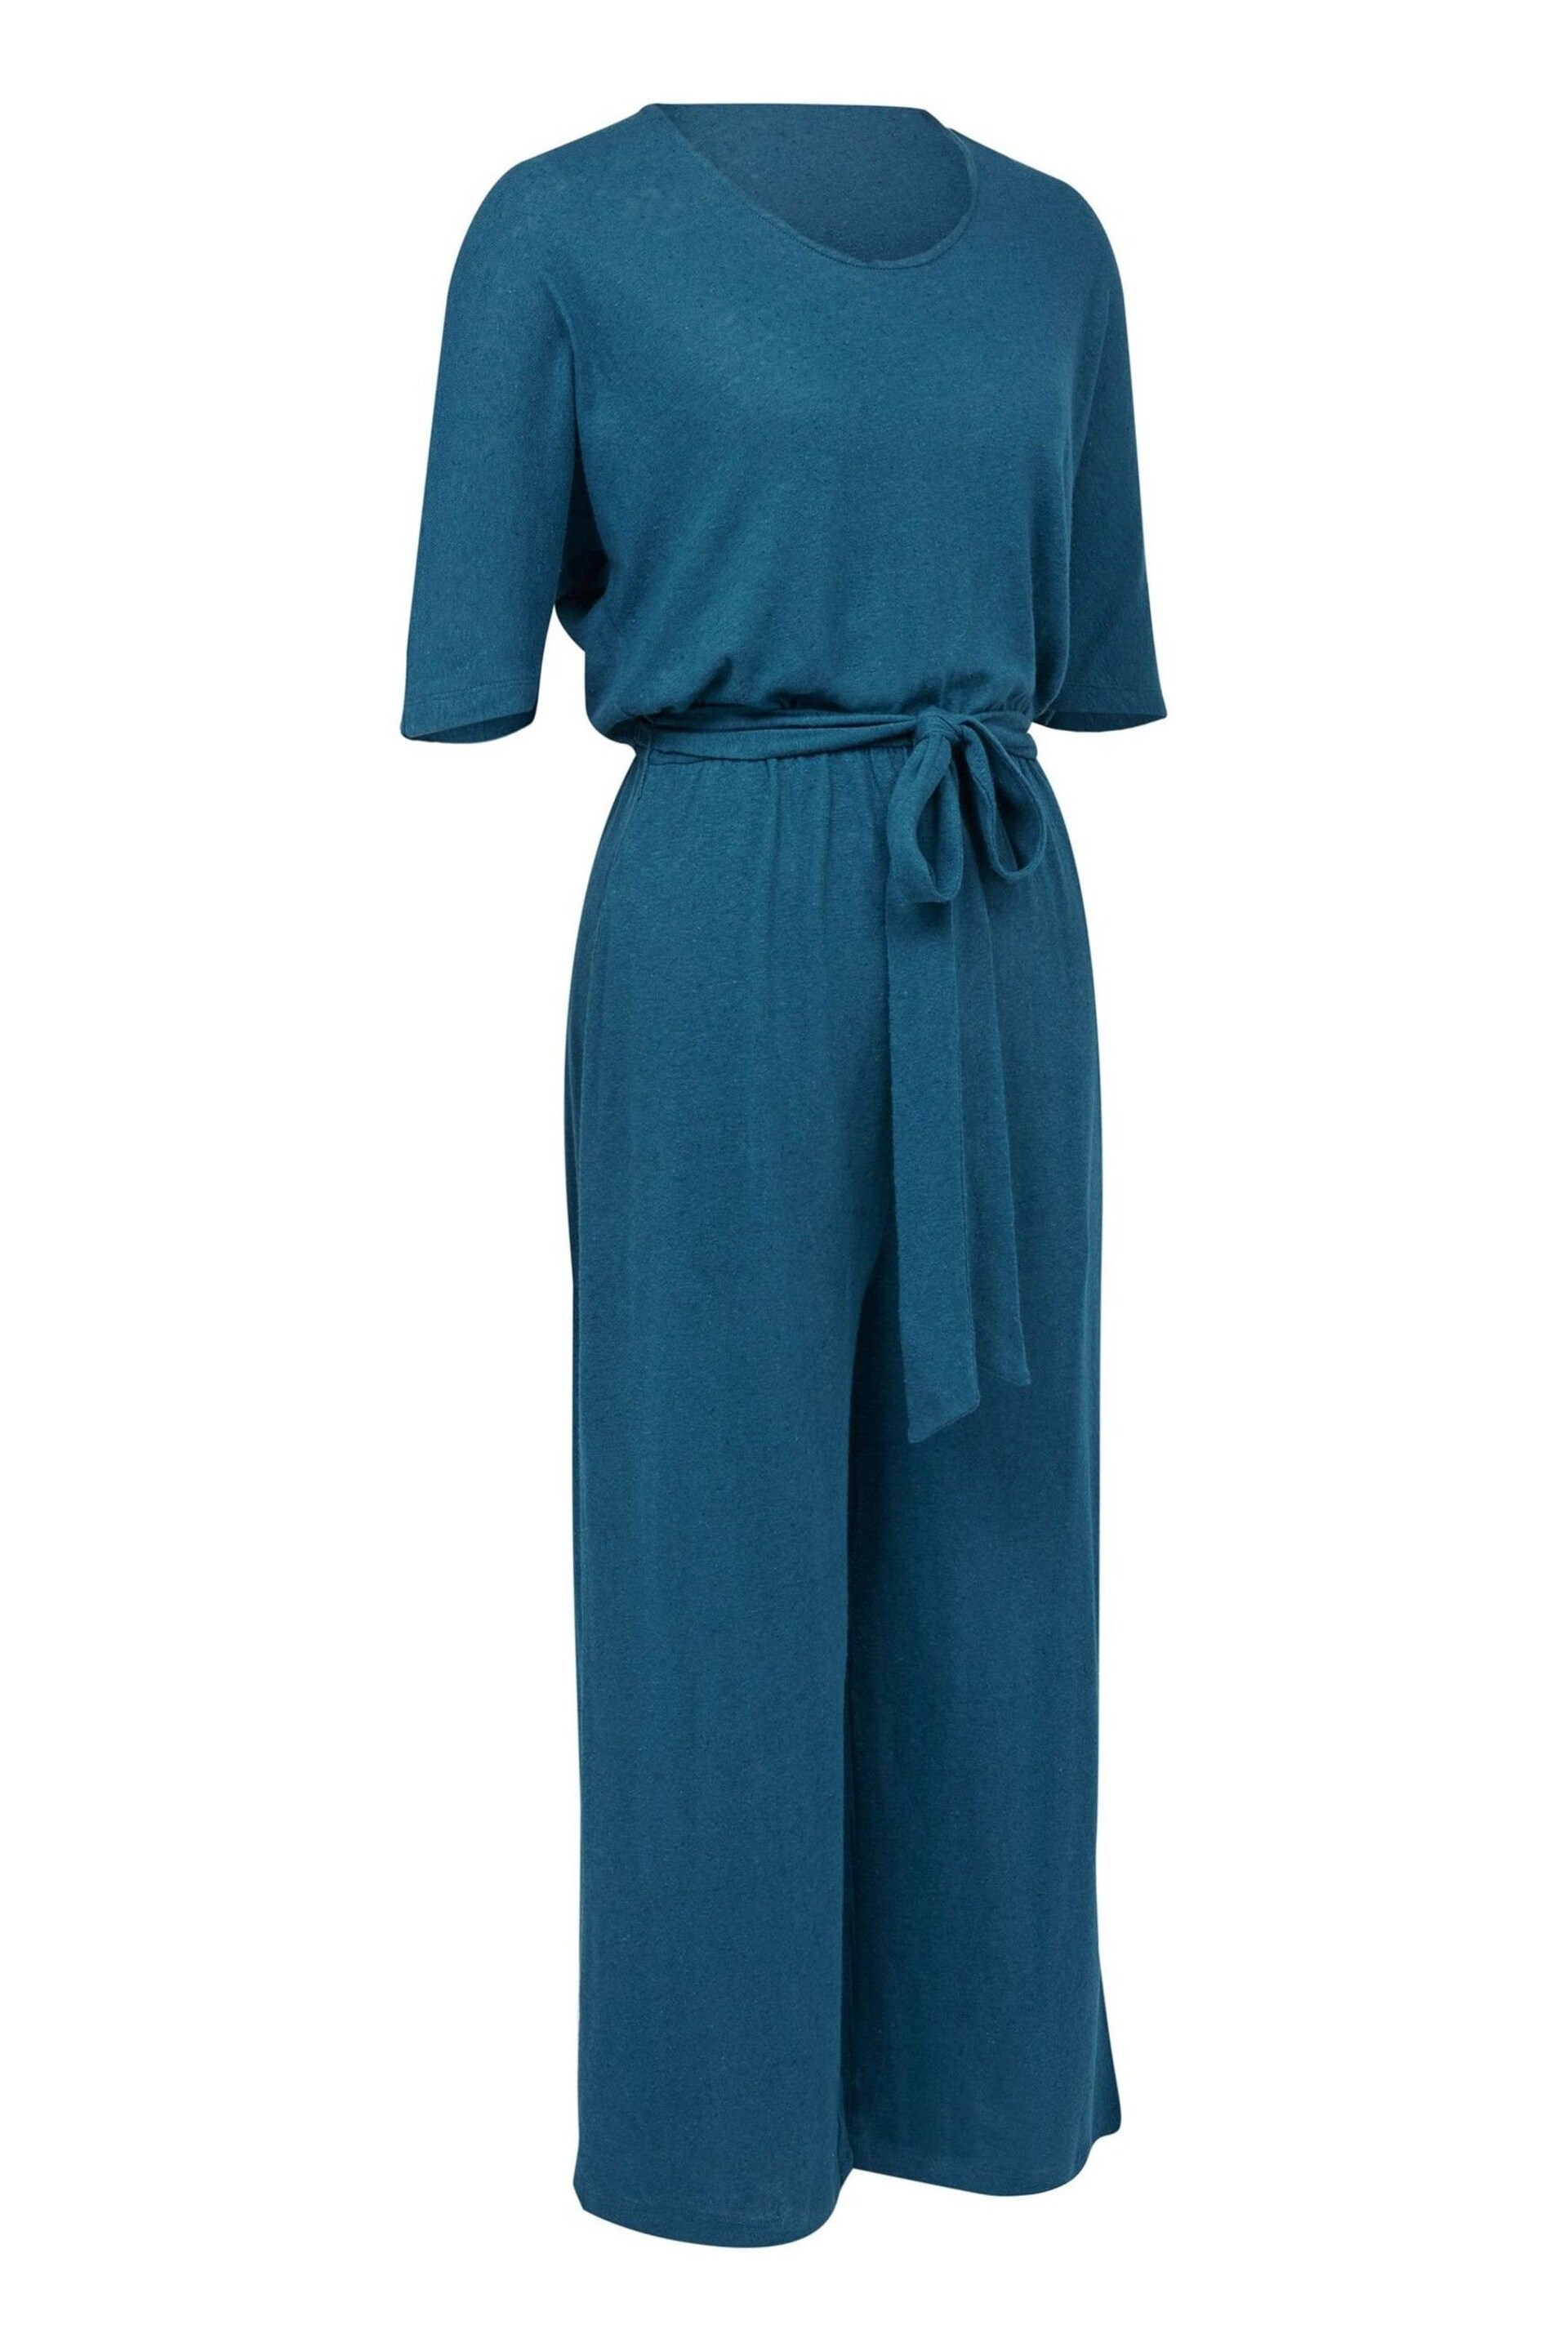 Celtic & Co. Blue Linen / Cotton Short Sleeve Jumpsuit - Image 4 of 6